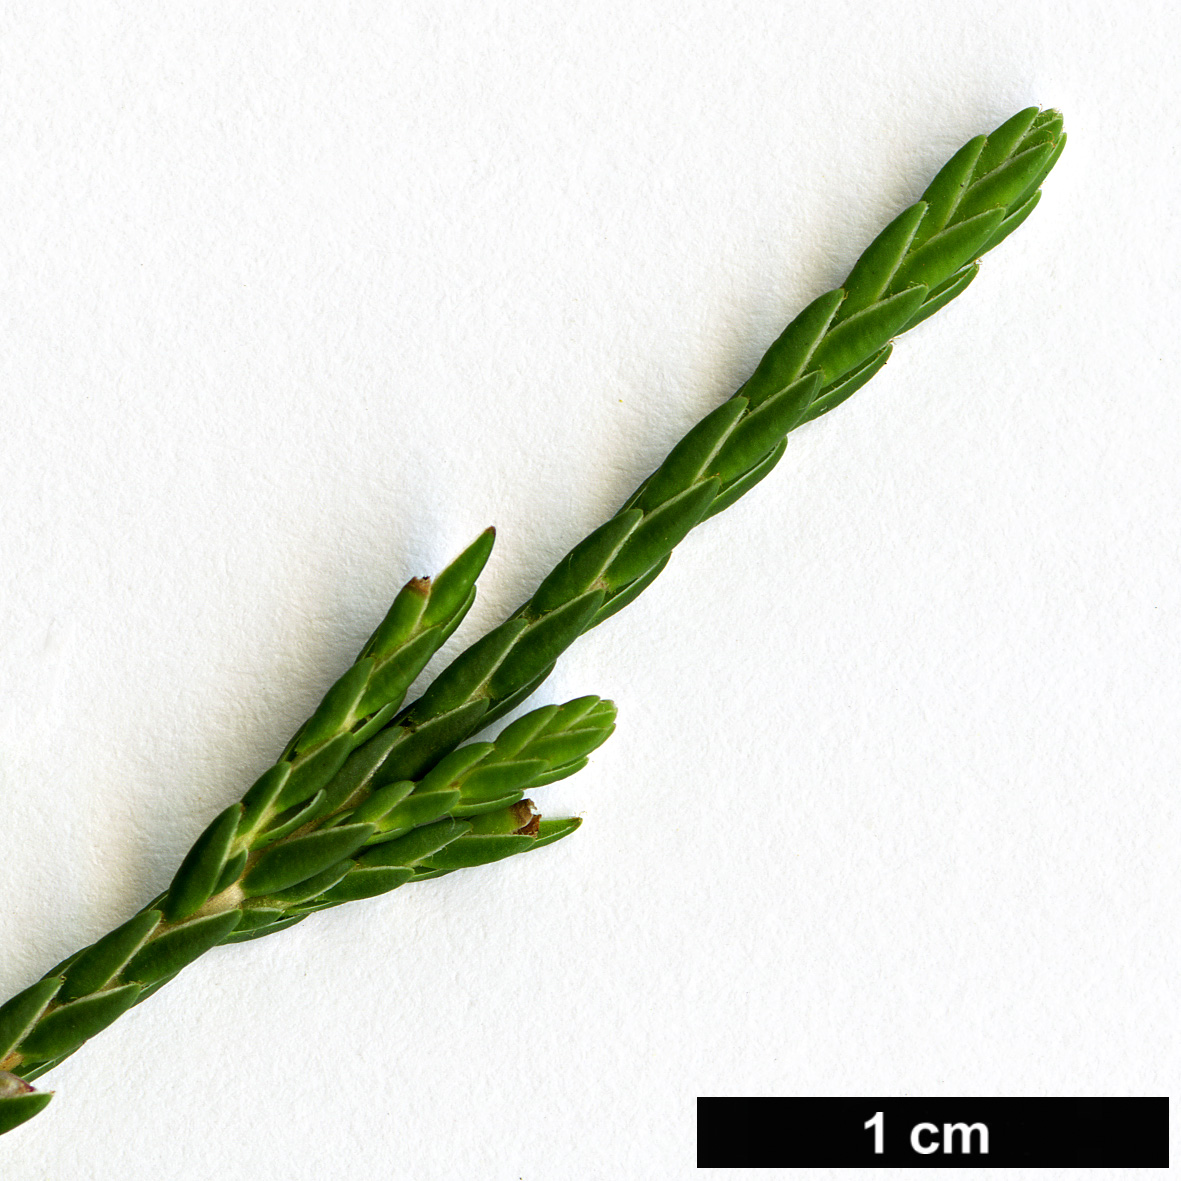 High resolution image: Family: Ericaceae - Genus: Cassiope - Taxon: mertensiana - SpeciesSub: subsp. californica